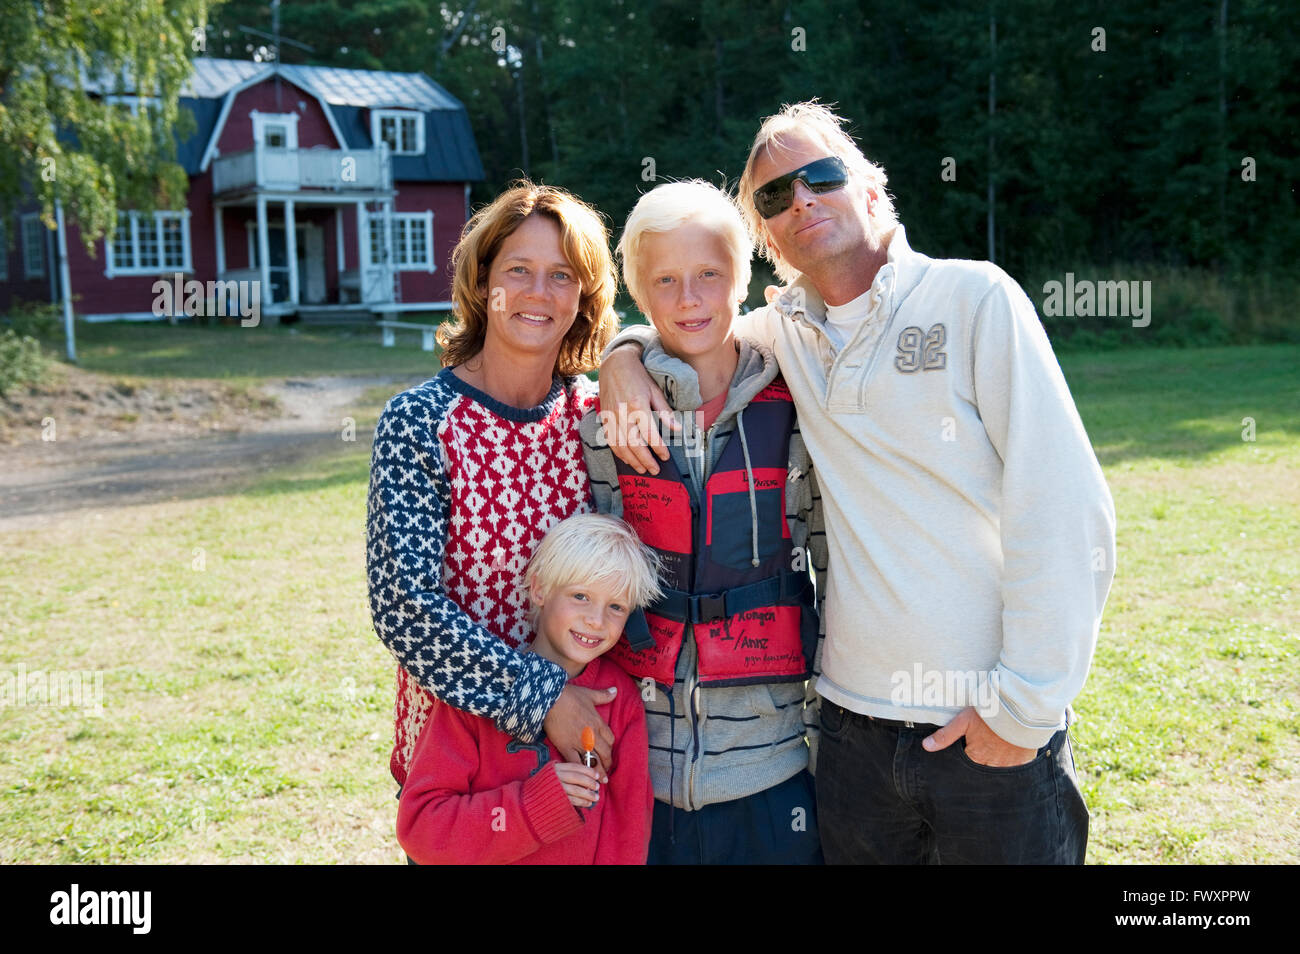 Sweden, Sodermanland, Vitsgarn, Family with two children (8-9, 14-15) Stock Photo